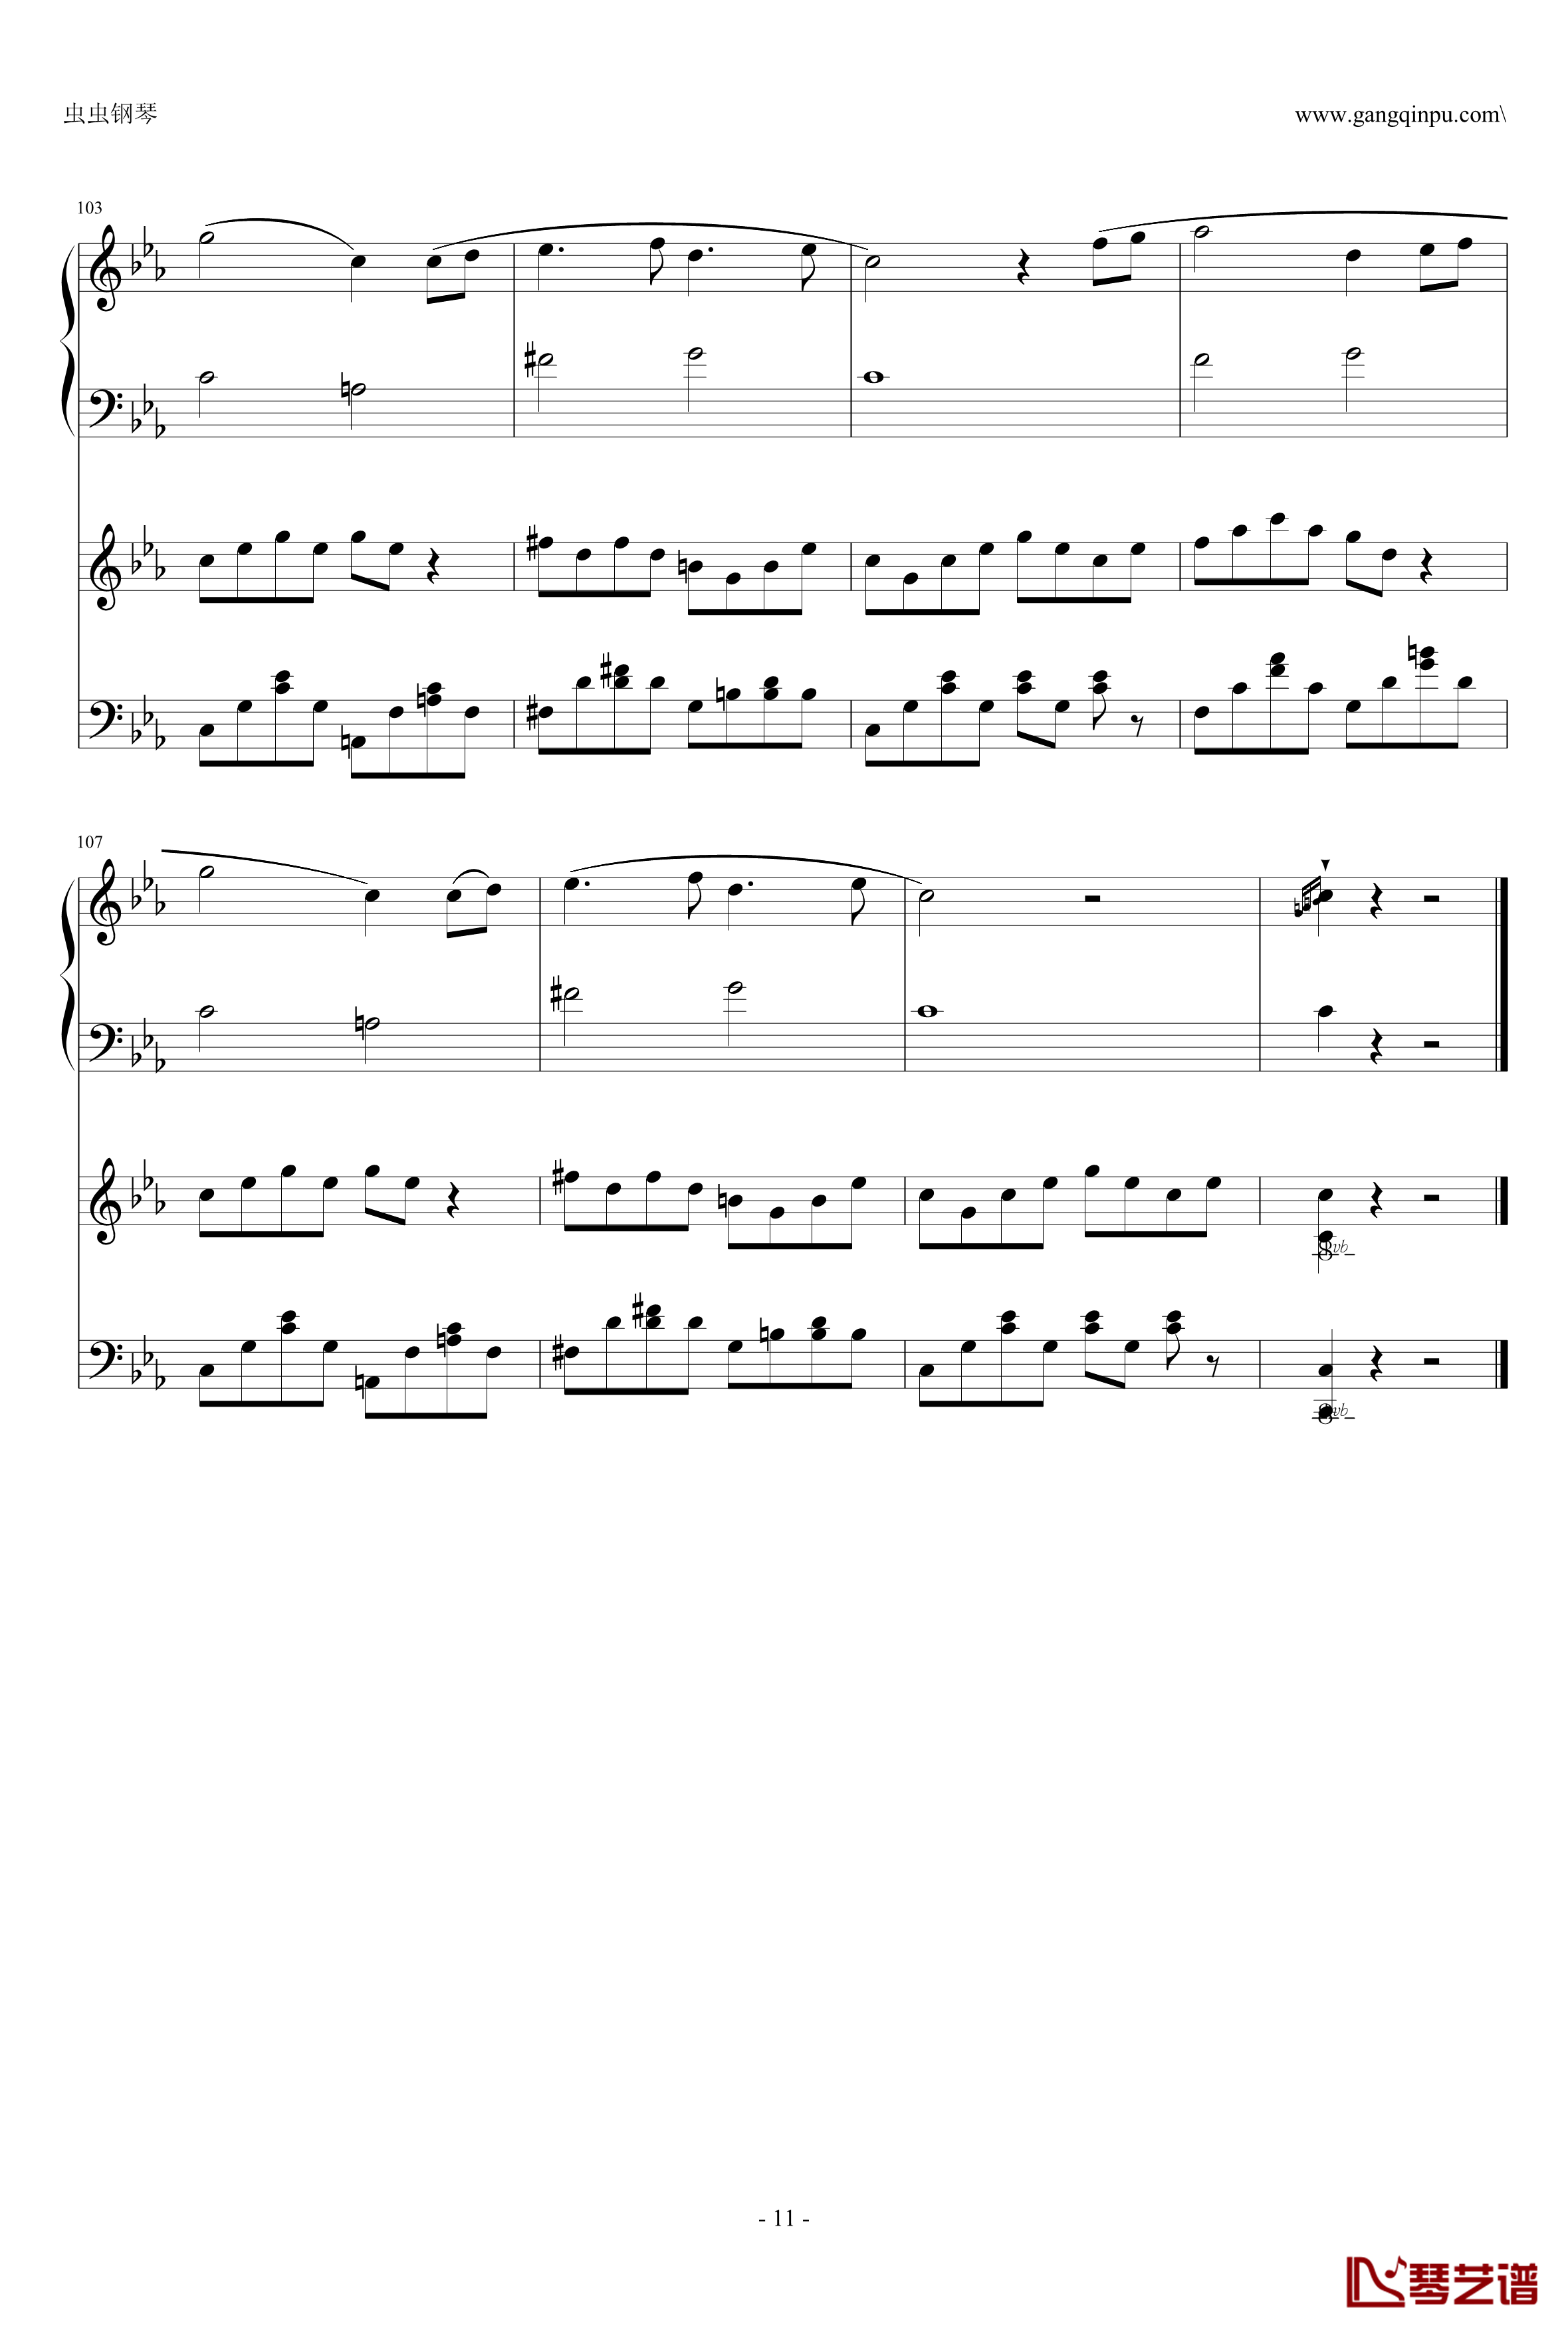 悲怆第三章钢琴谱-乐动达人-贝多芬-beethoven11